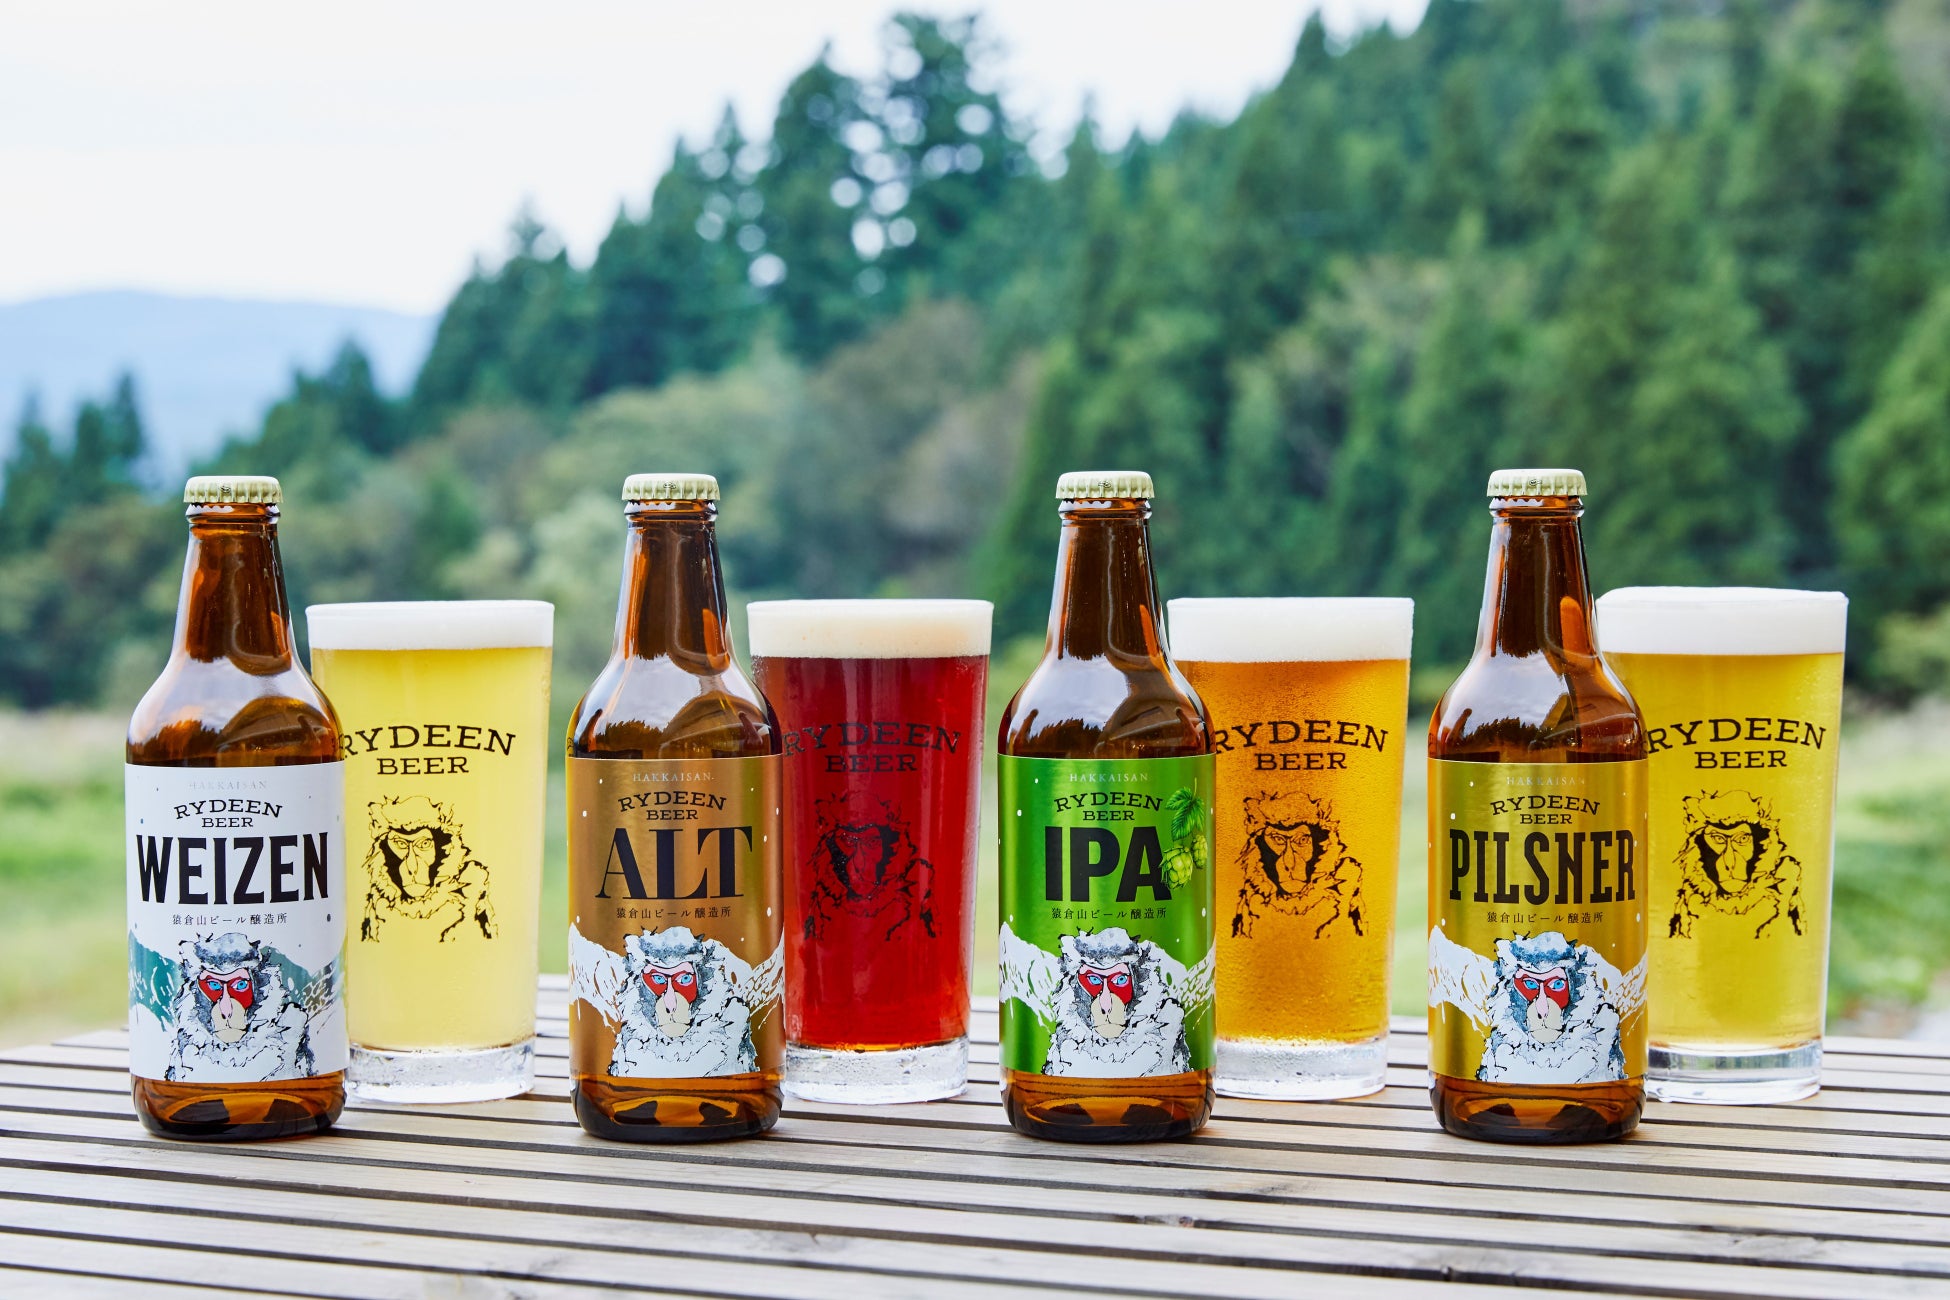 ライディーンビールから秋限定ビール新発売のサブ画像3_ライディーンビール 左からヴァイツェン、アルト、IPA、ピルスナー